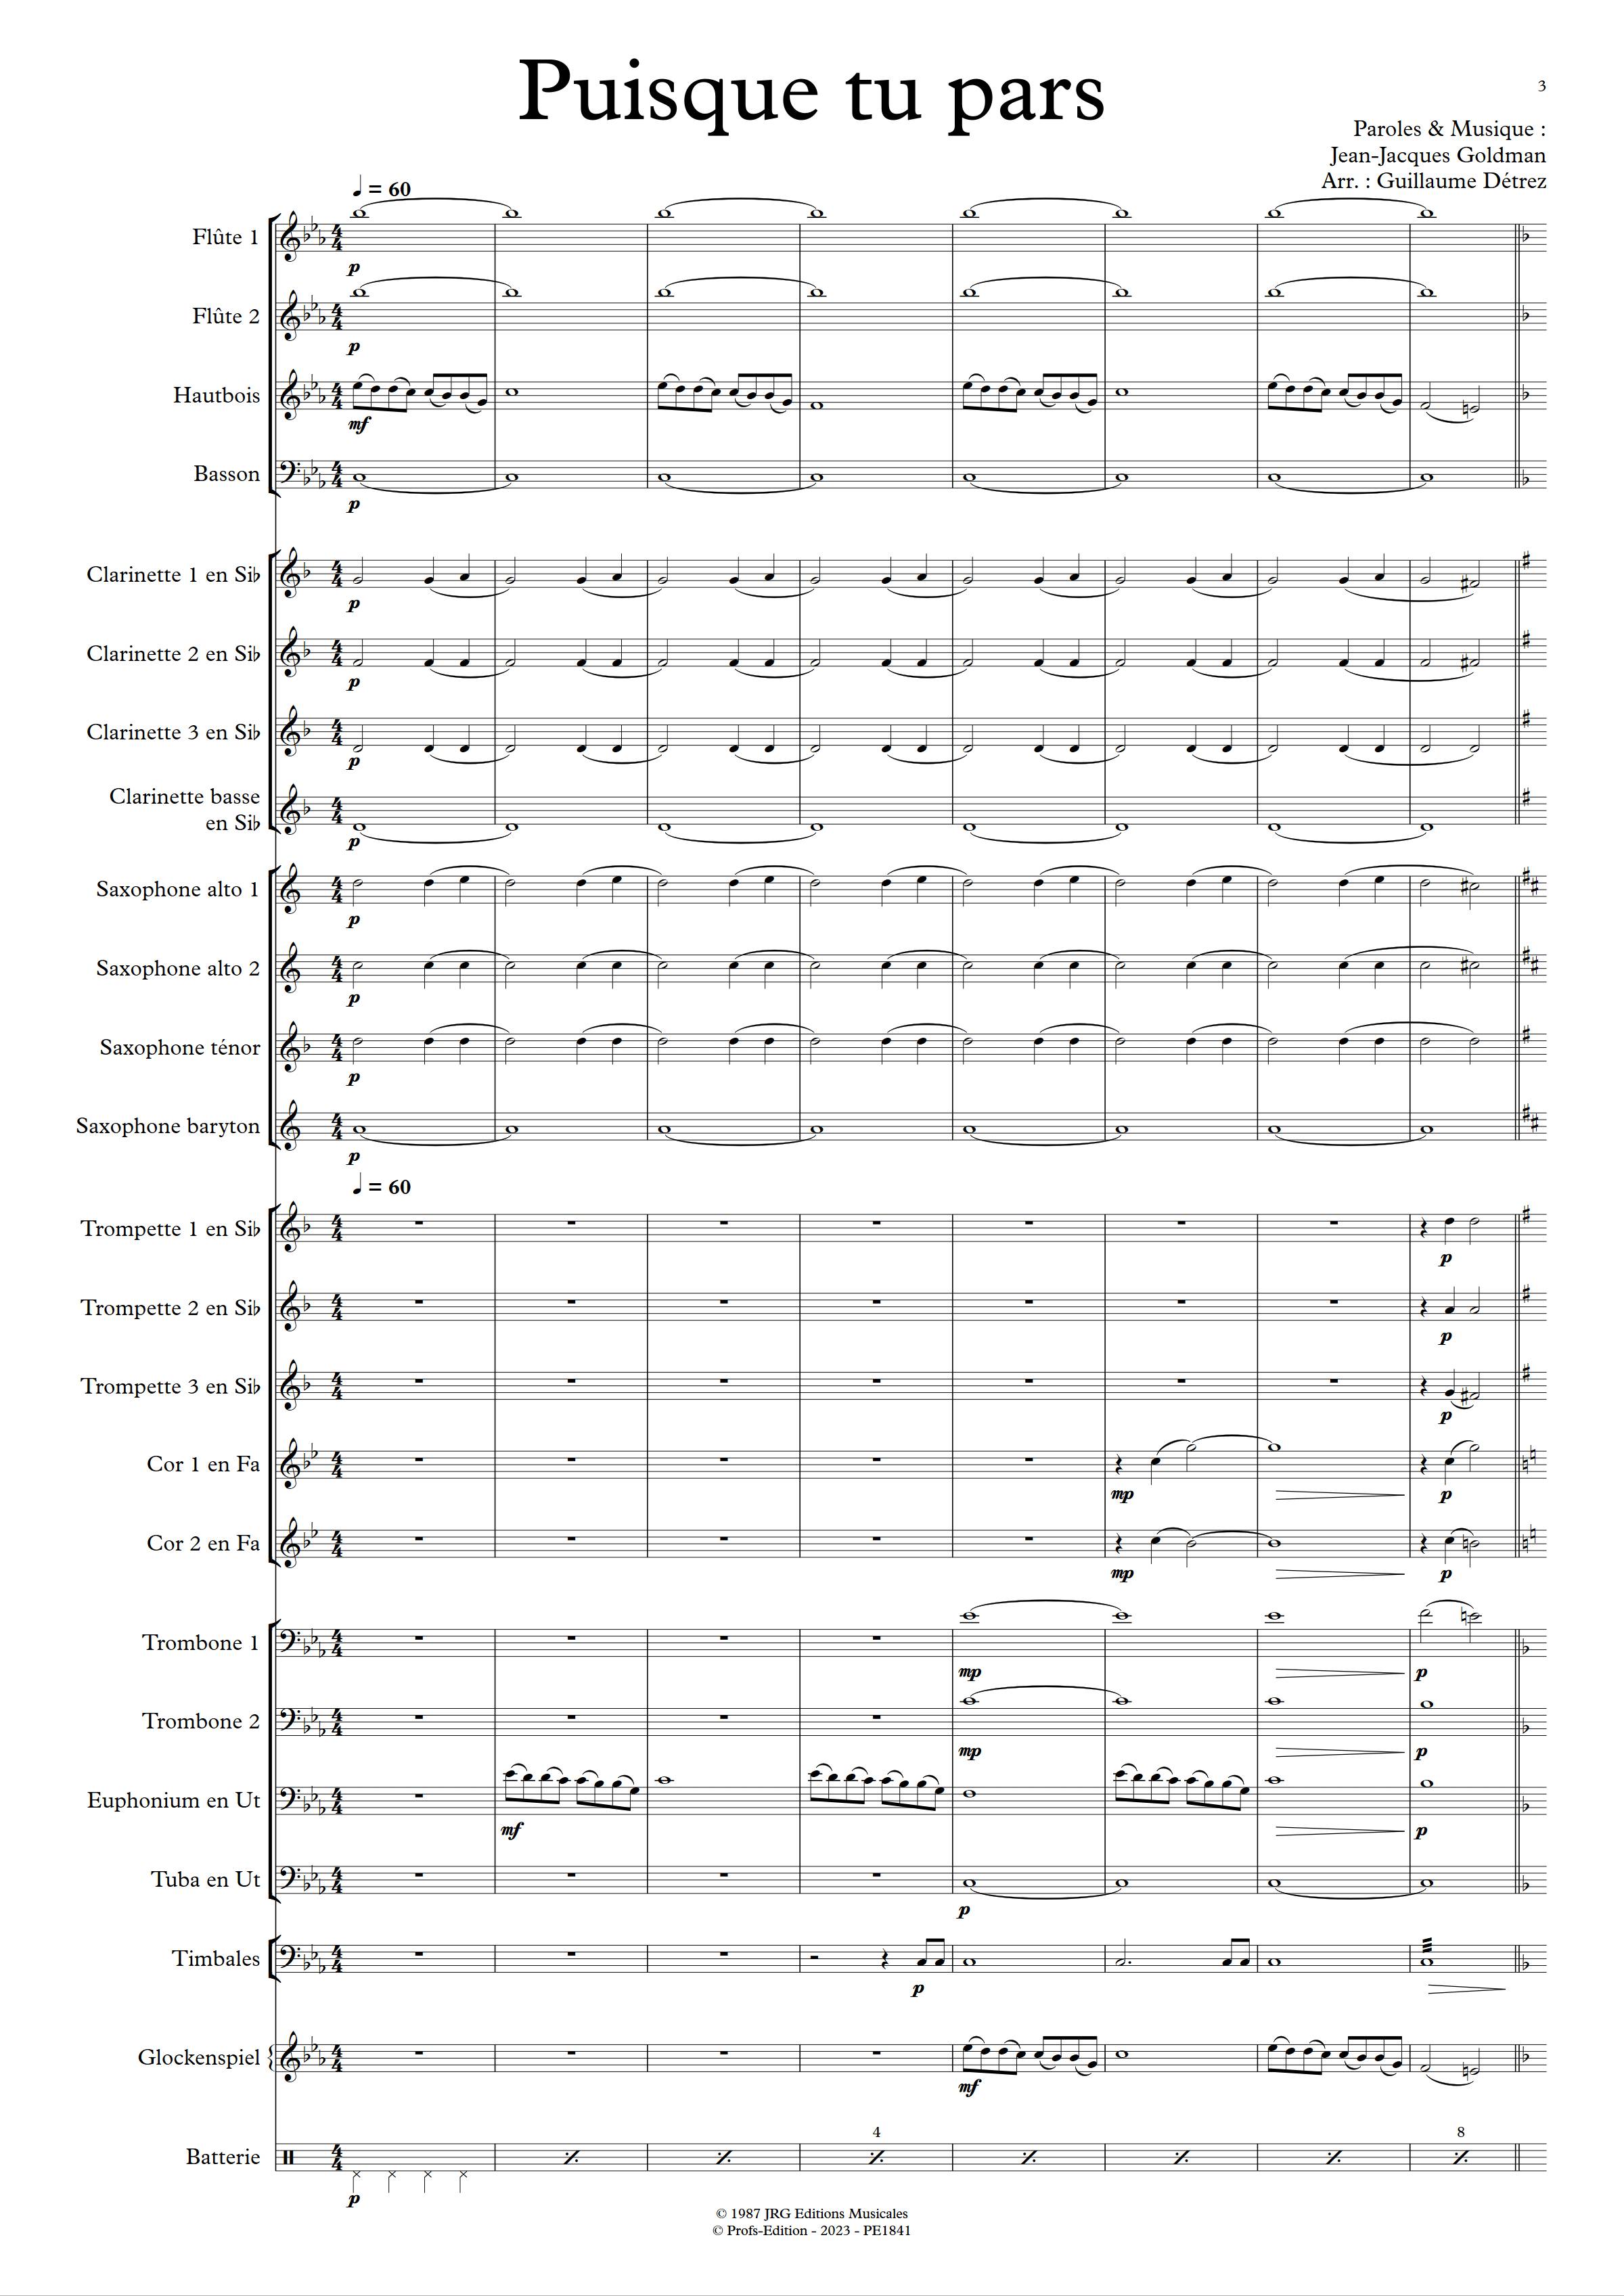 Puisque tu pars - Orchestre d'harmonie - GOLDMAN J. J. - app.scorescoreTitle